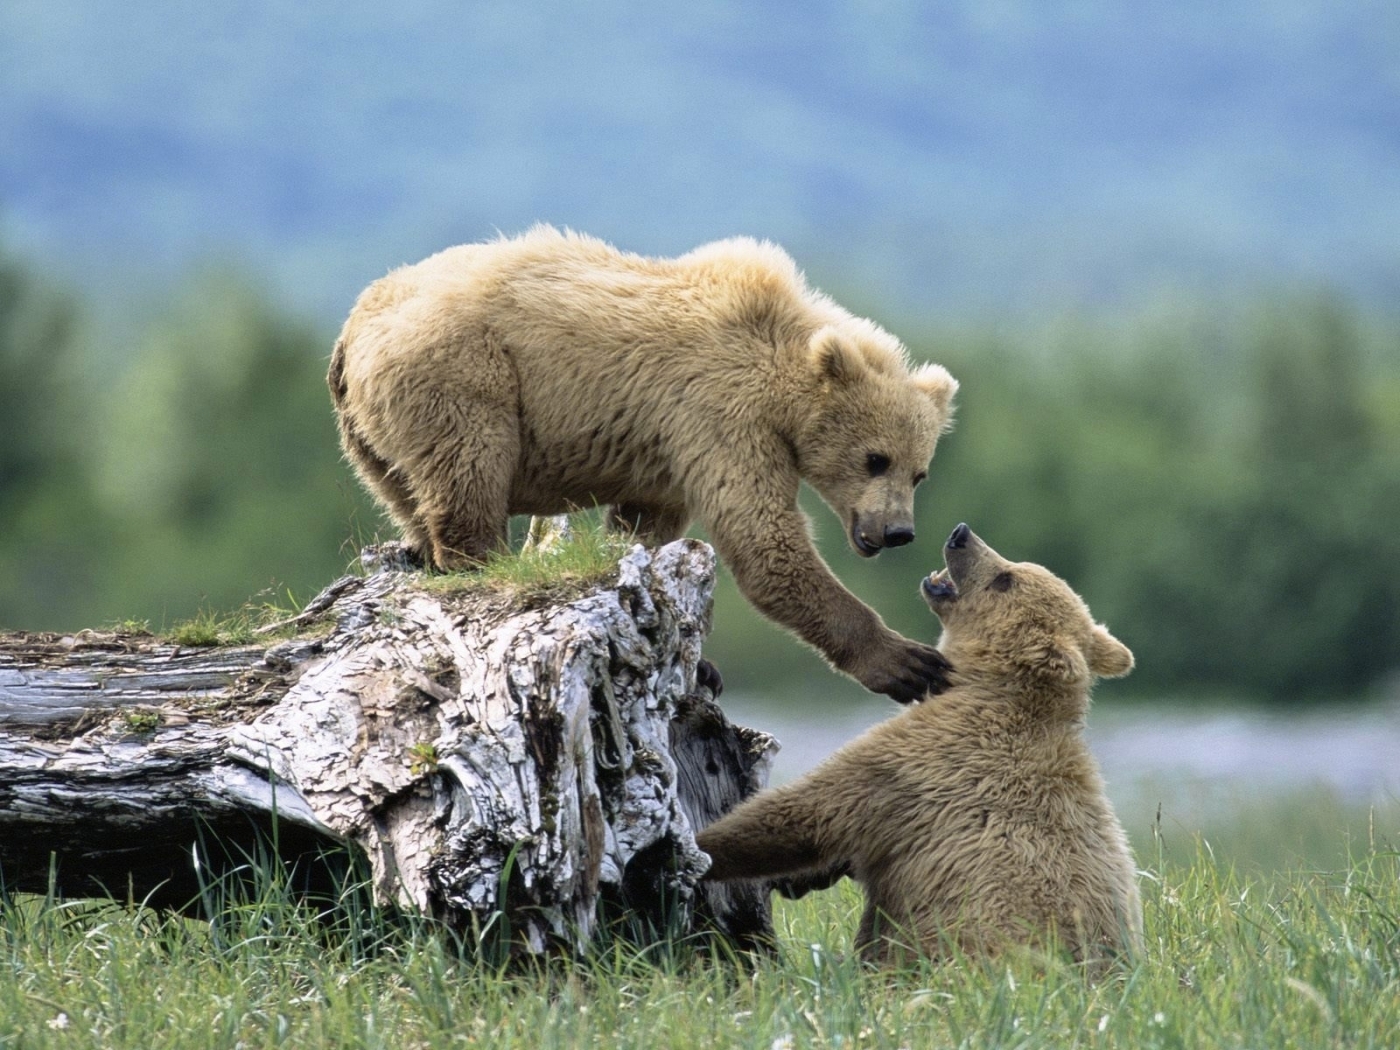 Скачать обои бесплатно Животные, Медведи картинка на рабочий стол ПК